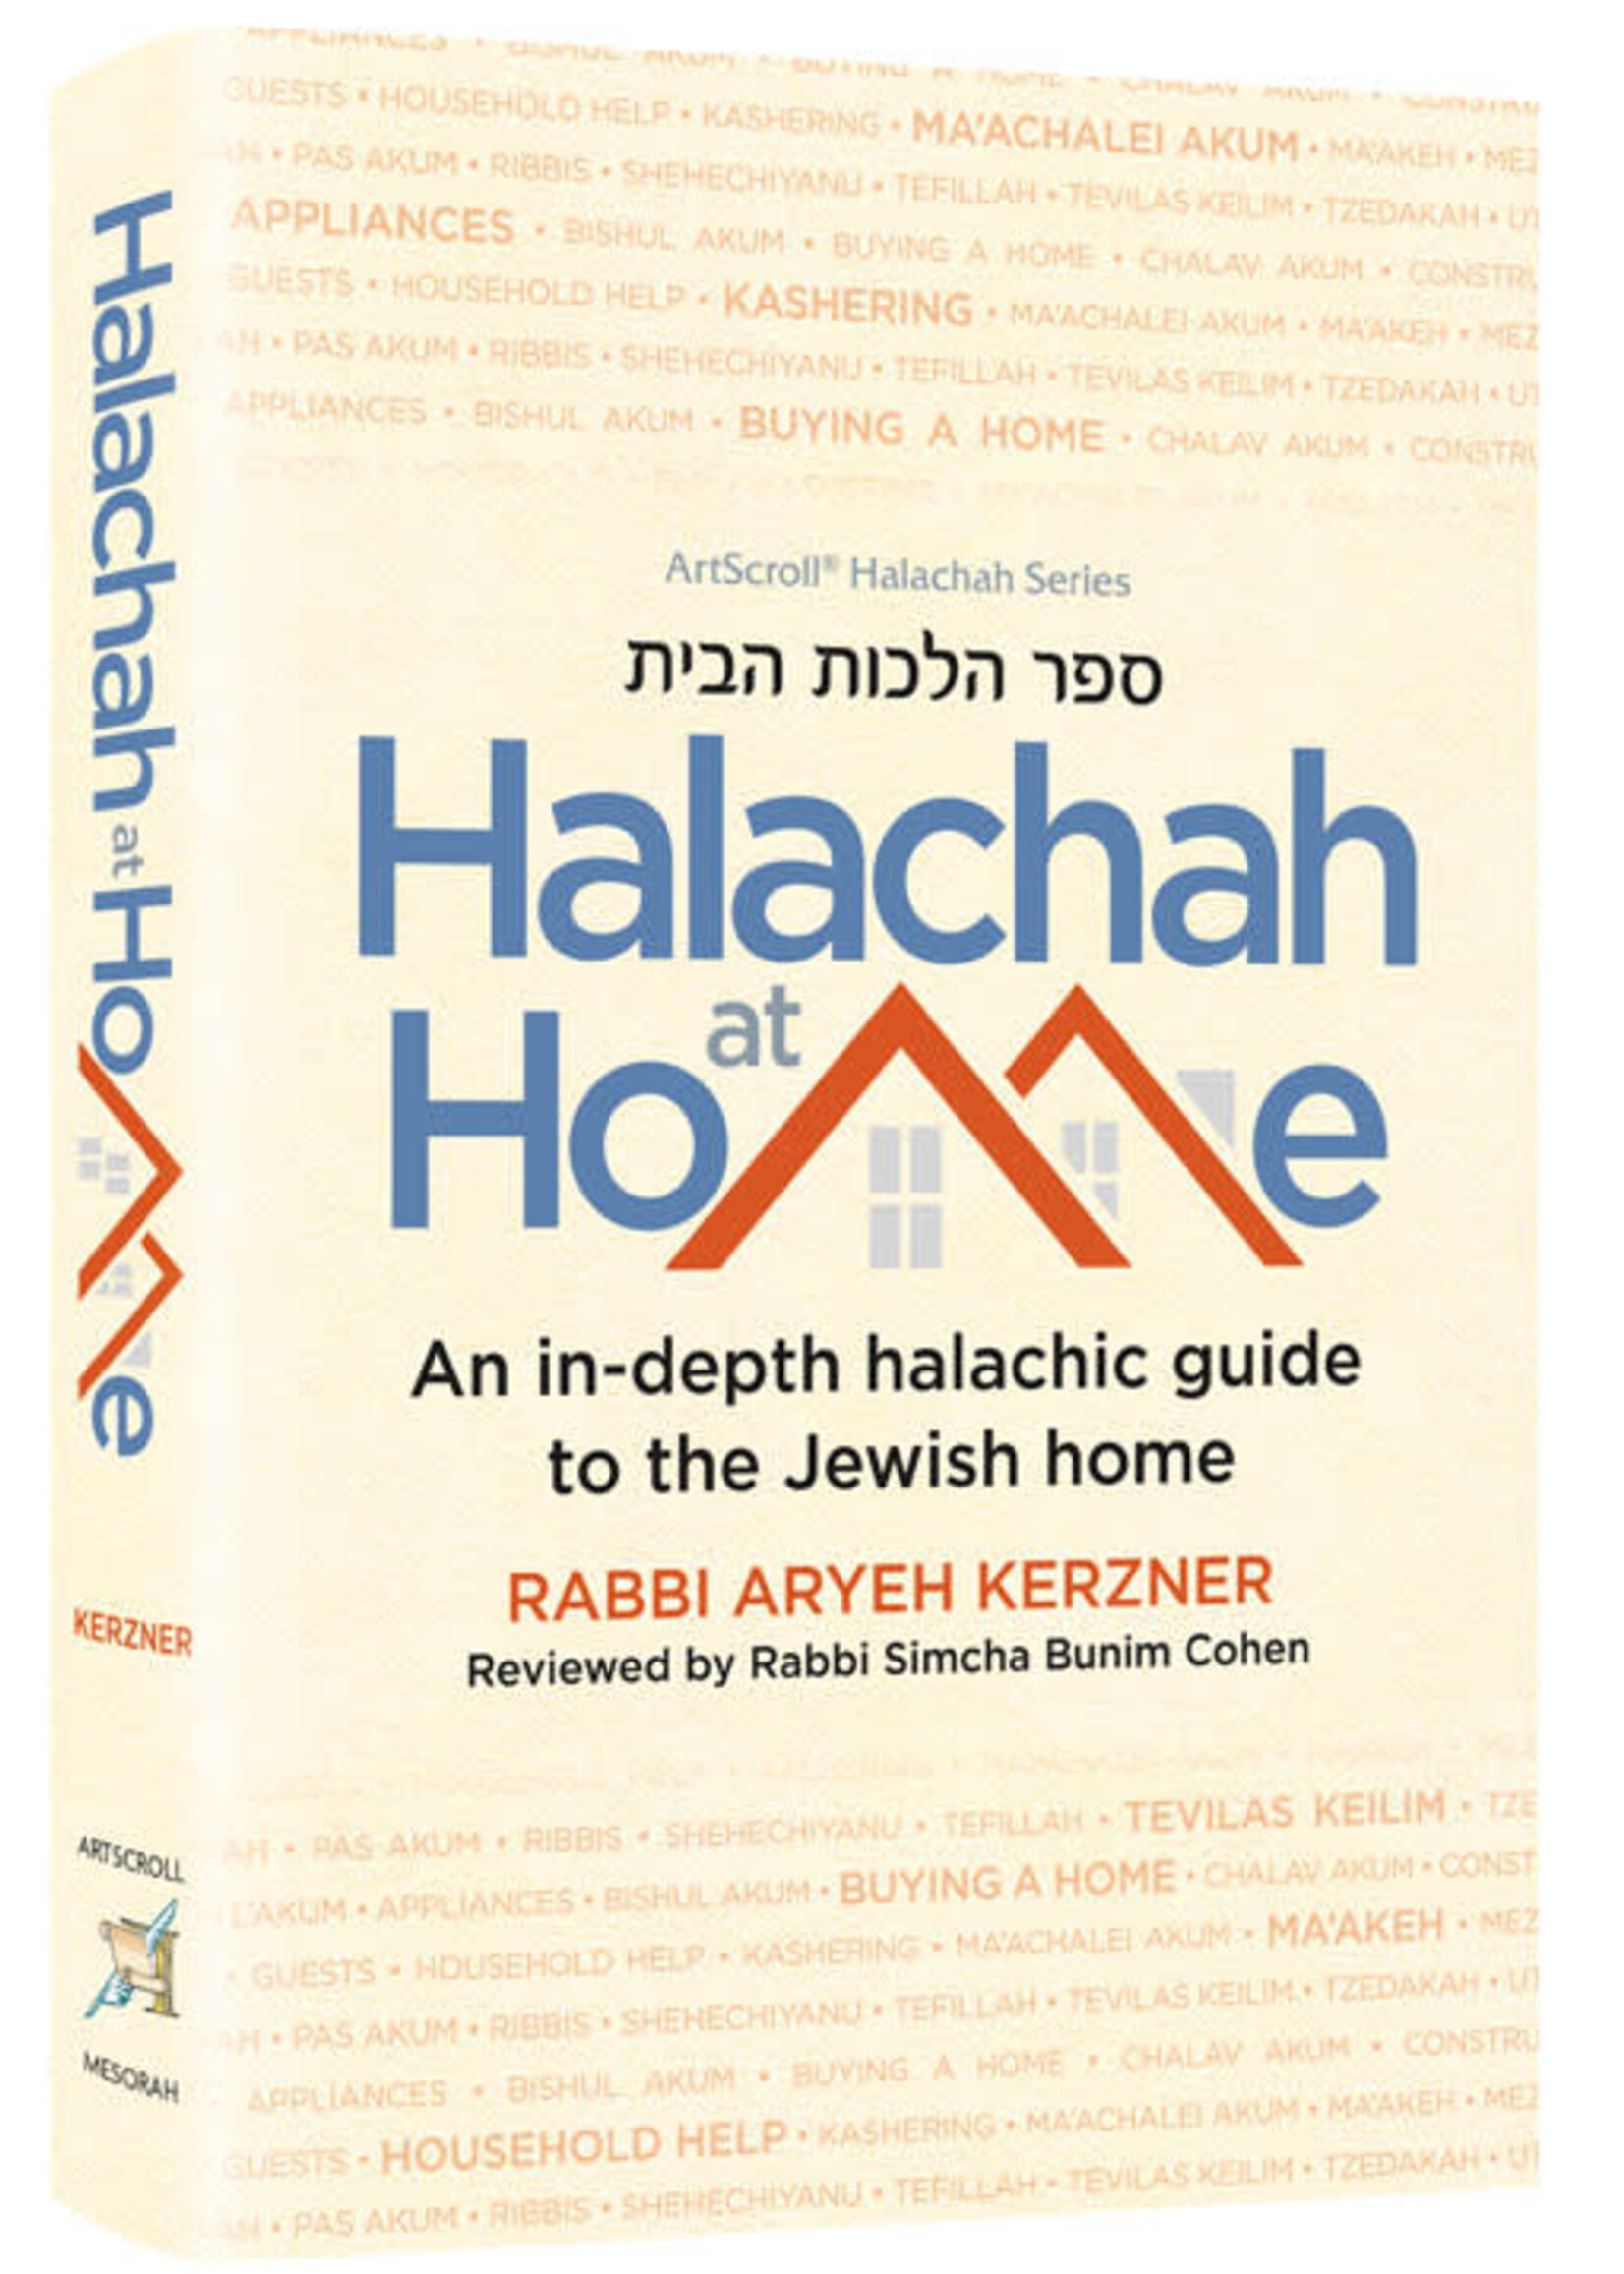 HALACHAH AT HOME